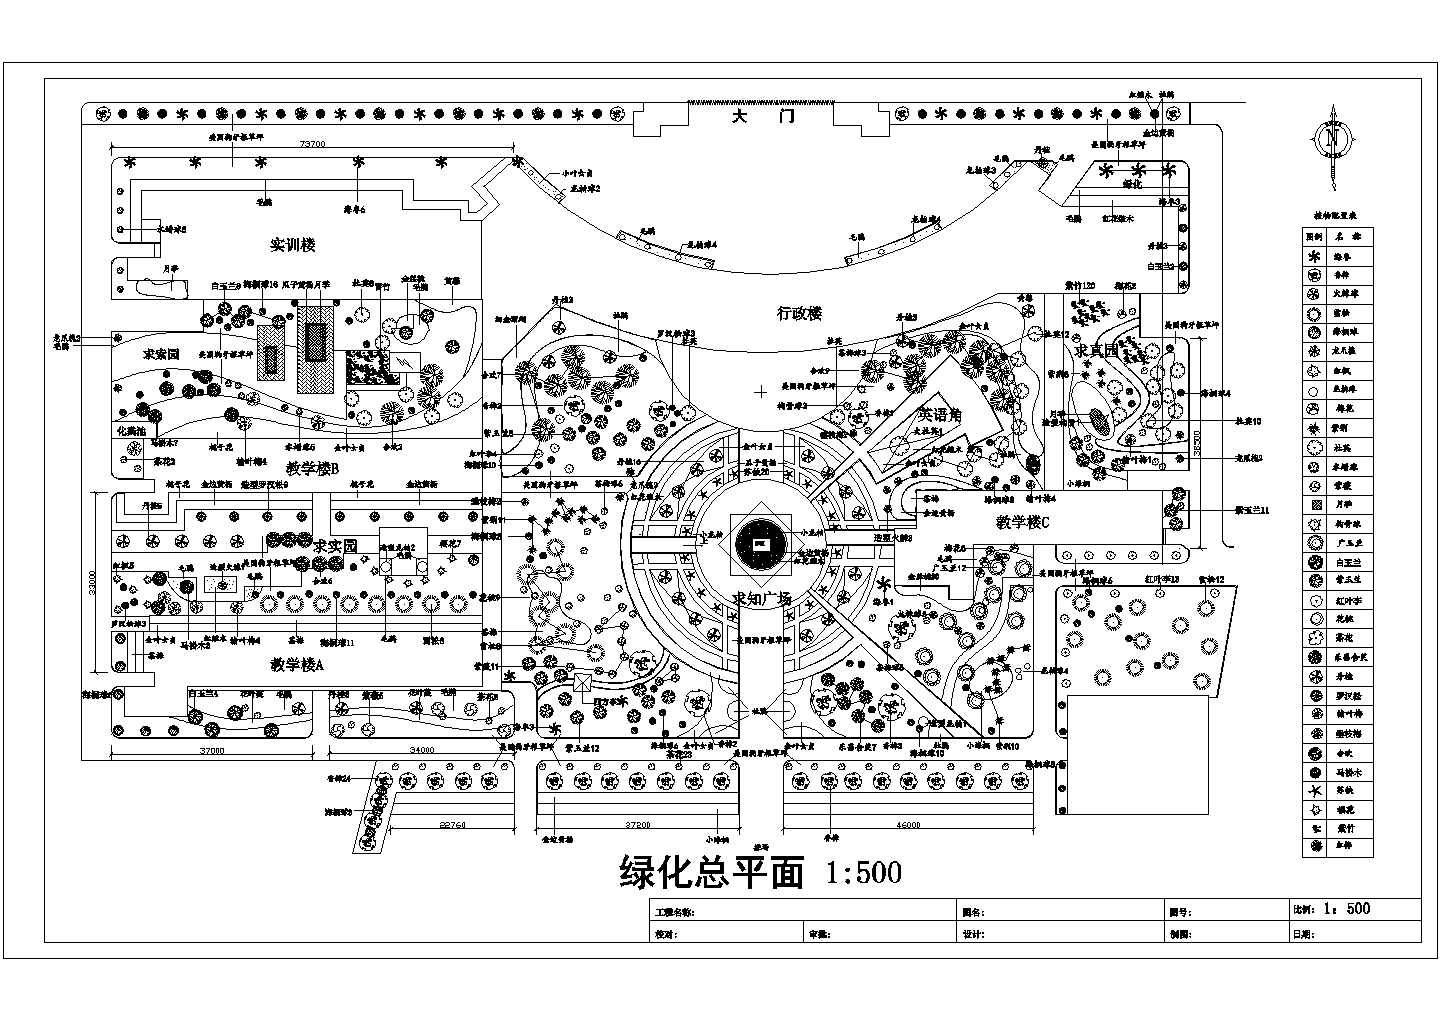 湖州市某高等技术学院校区平面规划设计CAD图纸